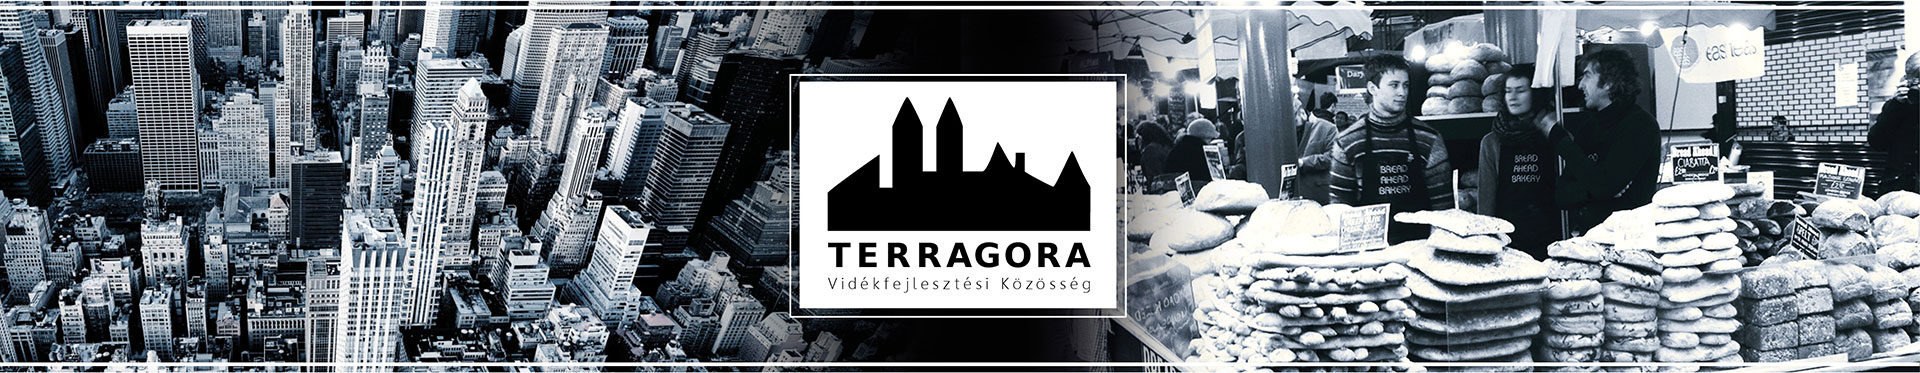 Terragora